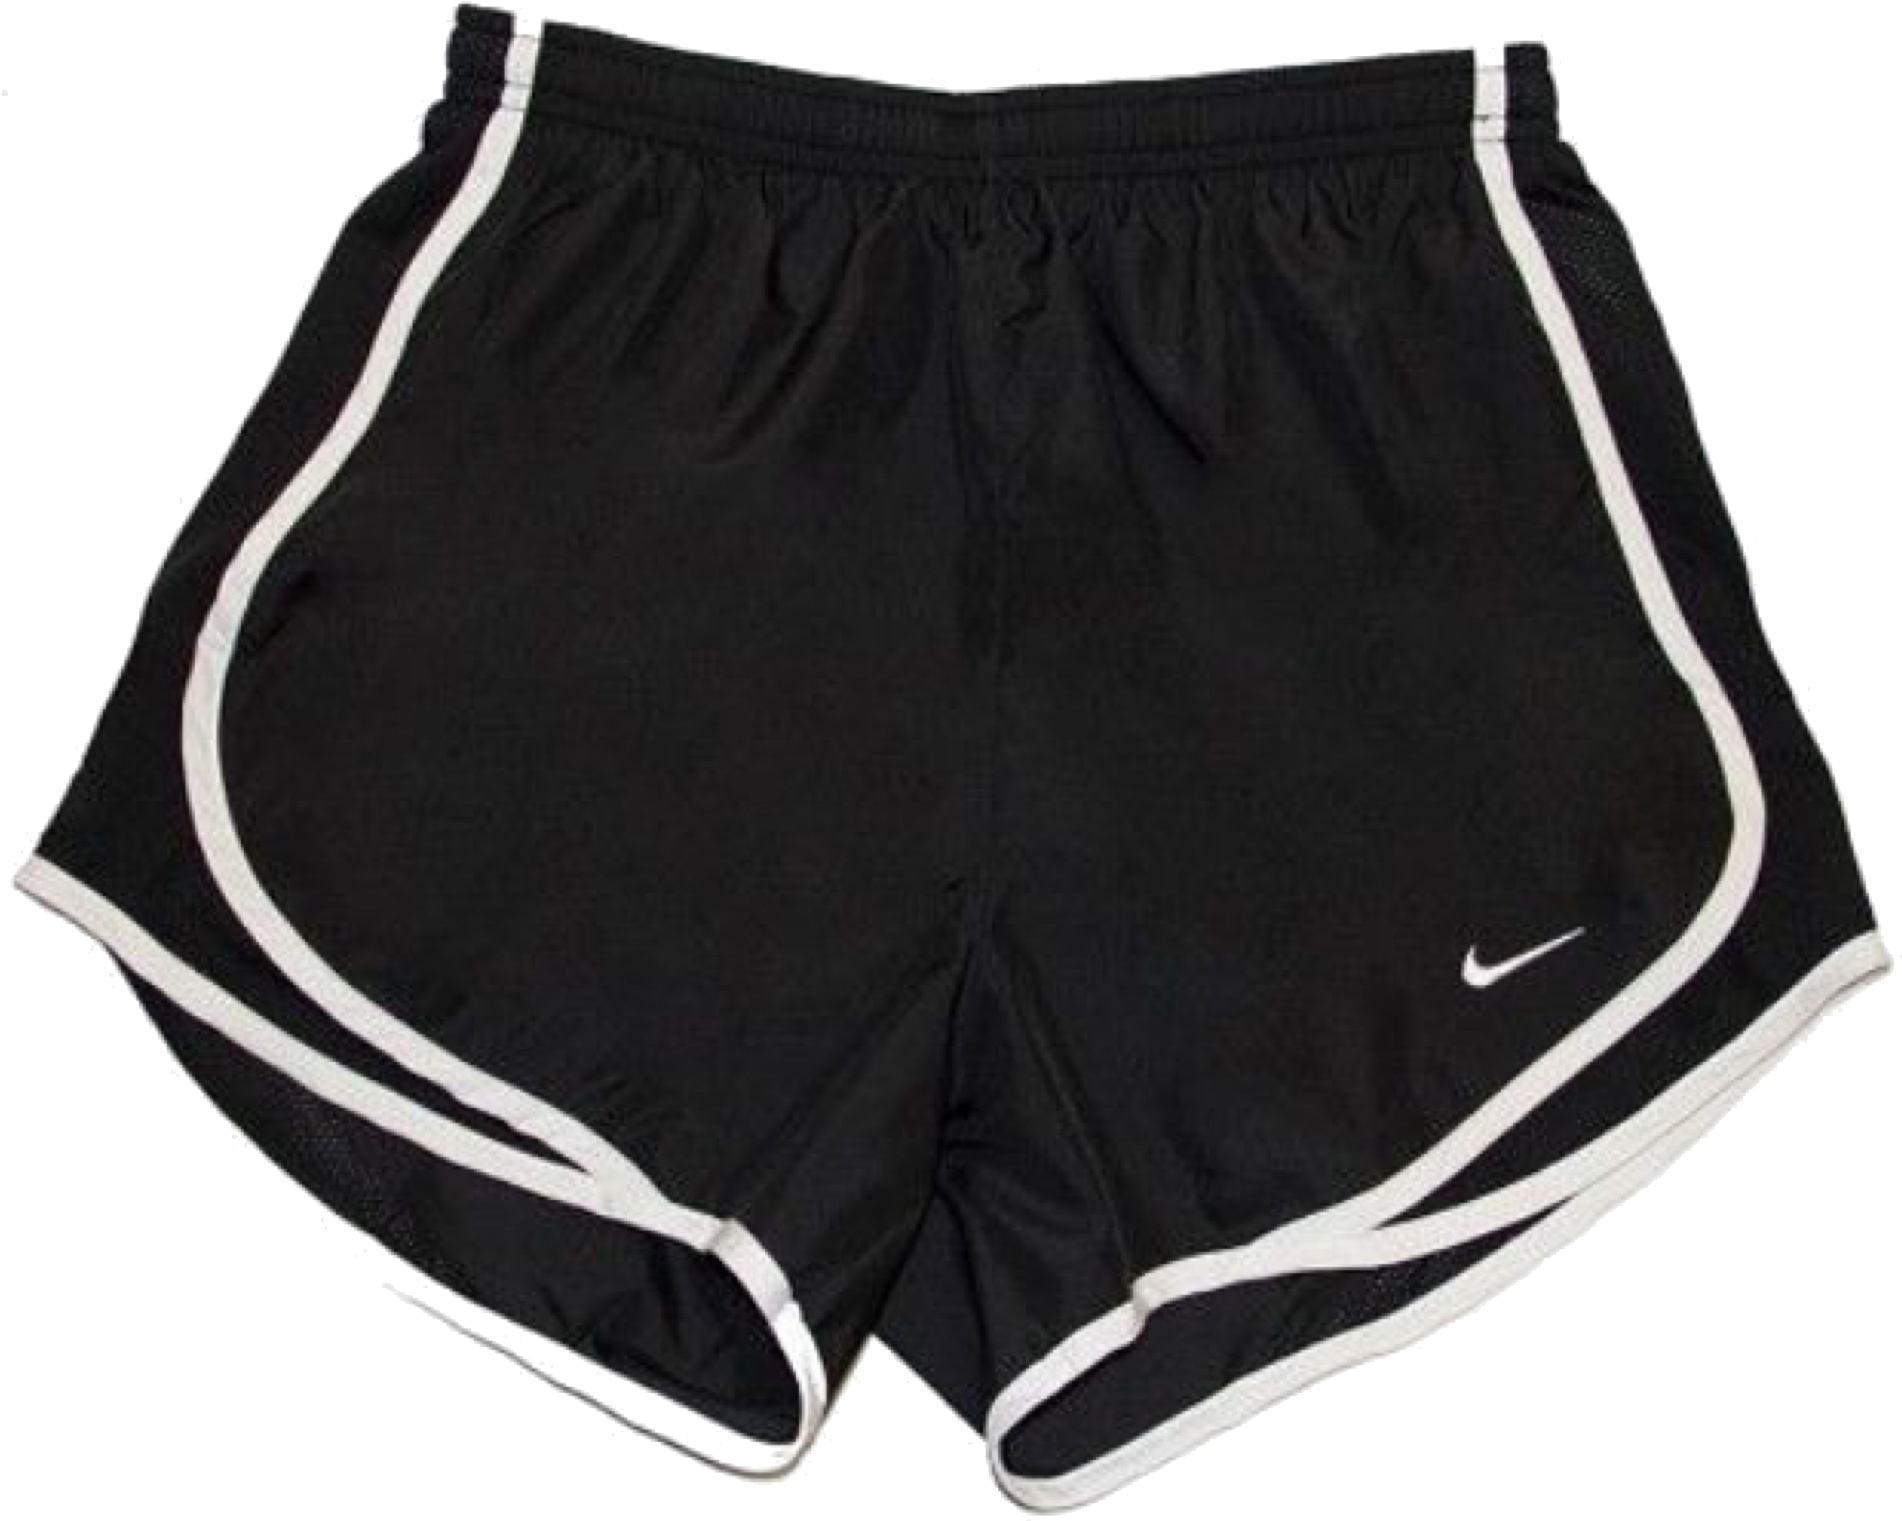 Black Nike Running Shorts PNG image